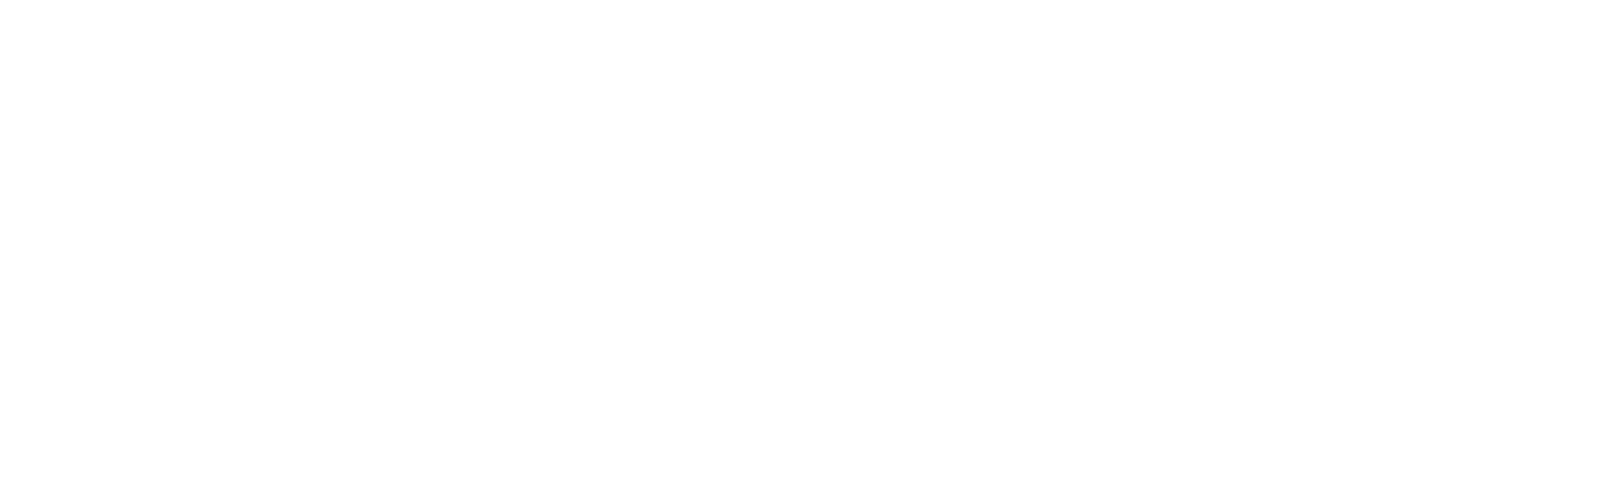 Diverse Services